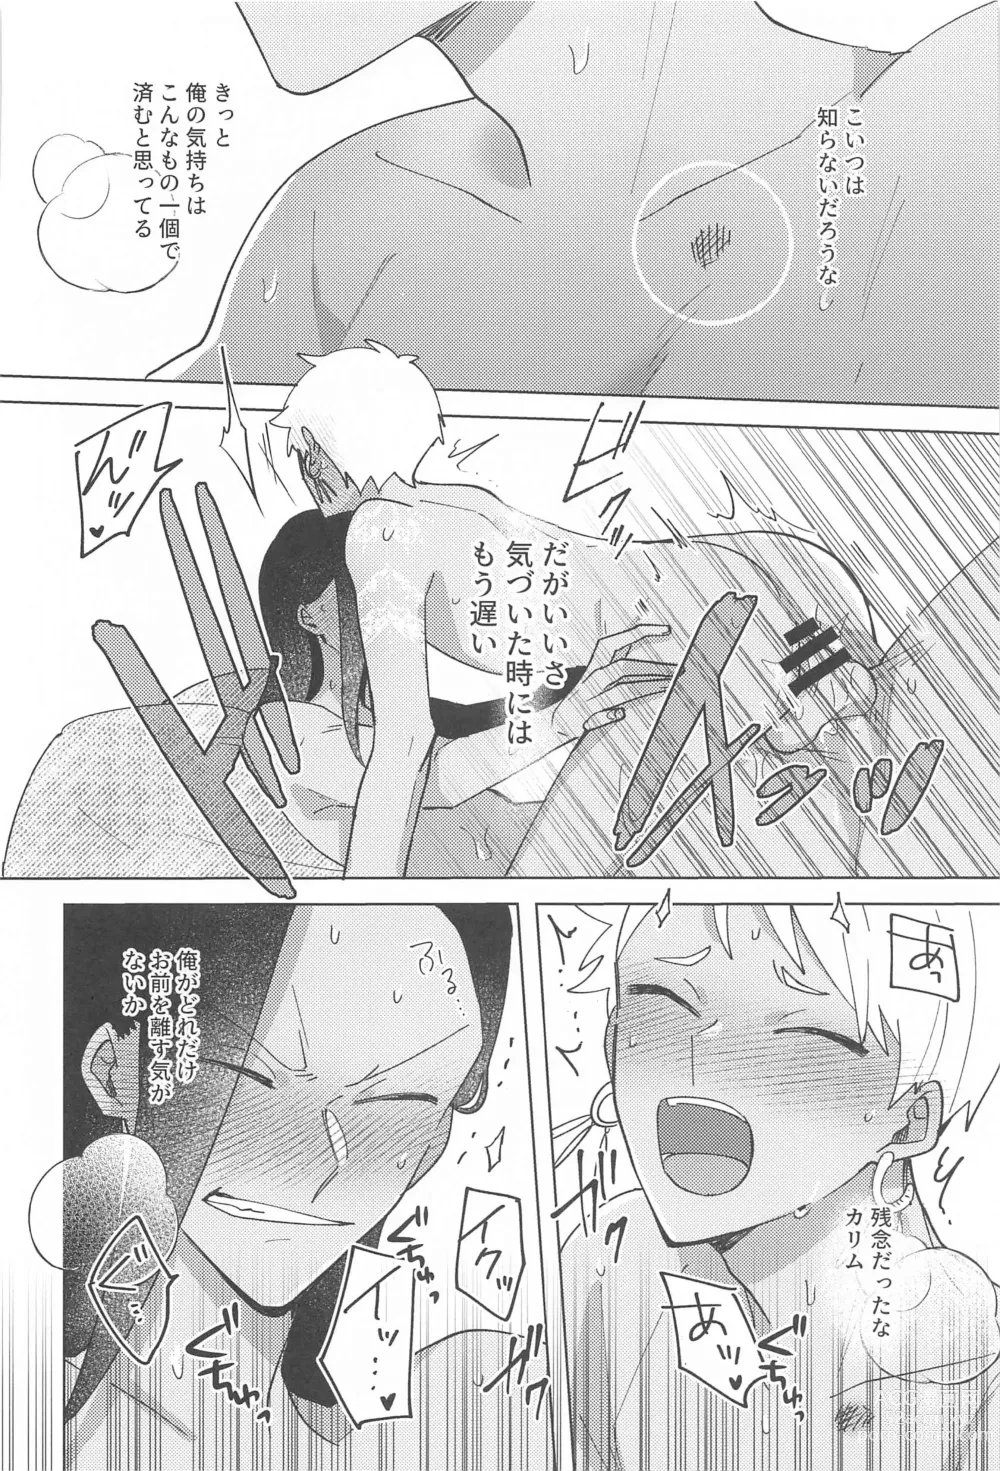 Page 39 of doujinshi Gaman Dekinai Muri datte!